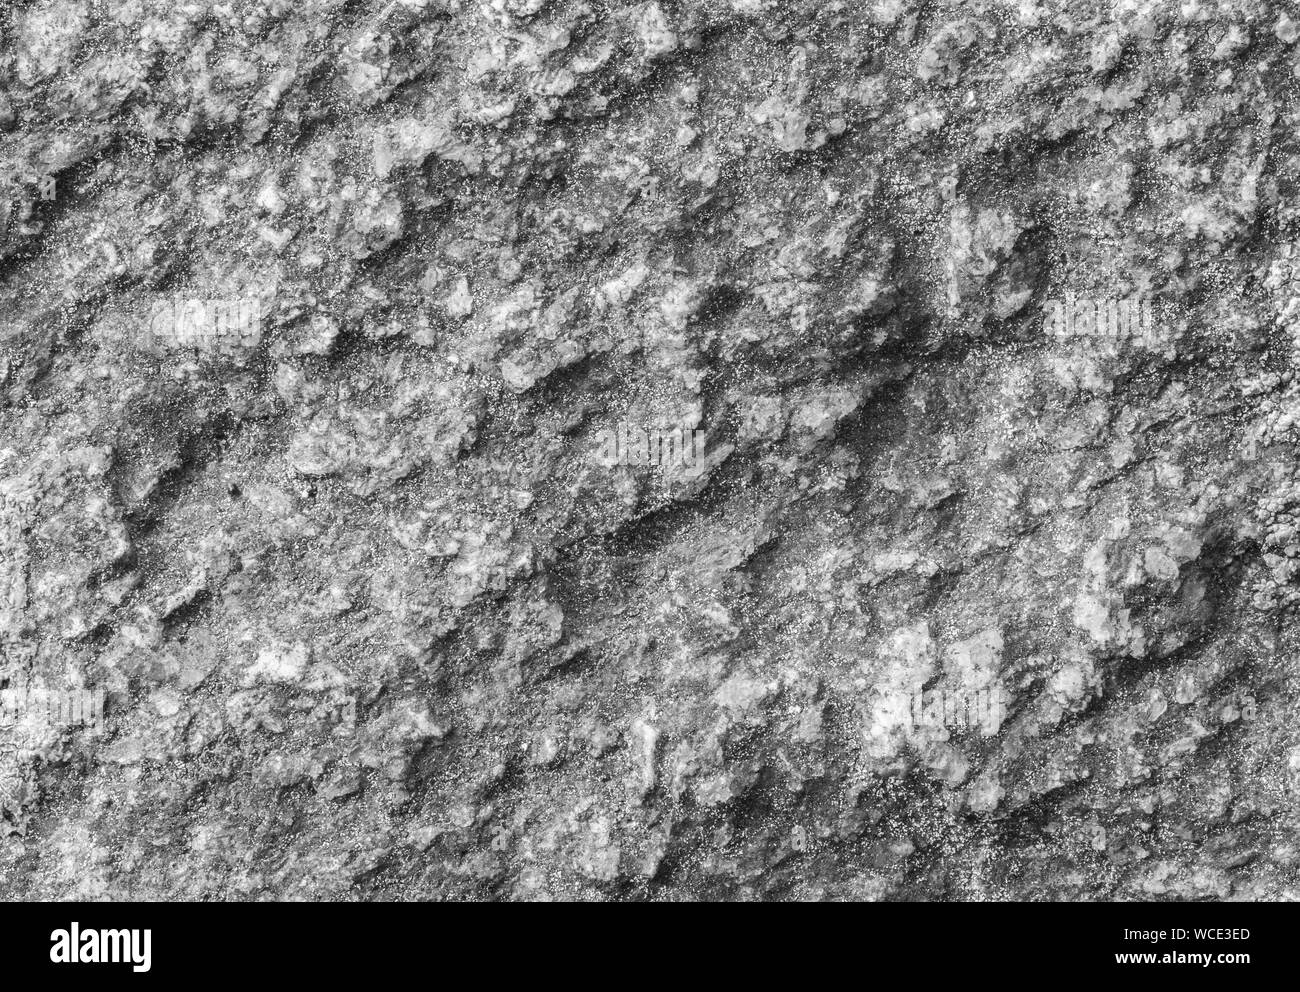 Makro Nahaufnahme einer rauhen rock Oberfläche mit feinen Sandkörnchen in Schwarz und Weiß. Hochauflösende full frame strukturierten Hintergrund. Stockfoto